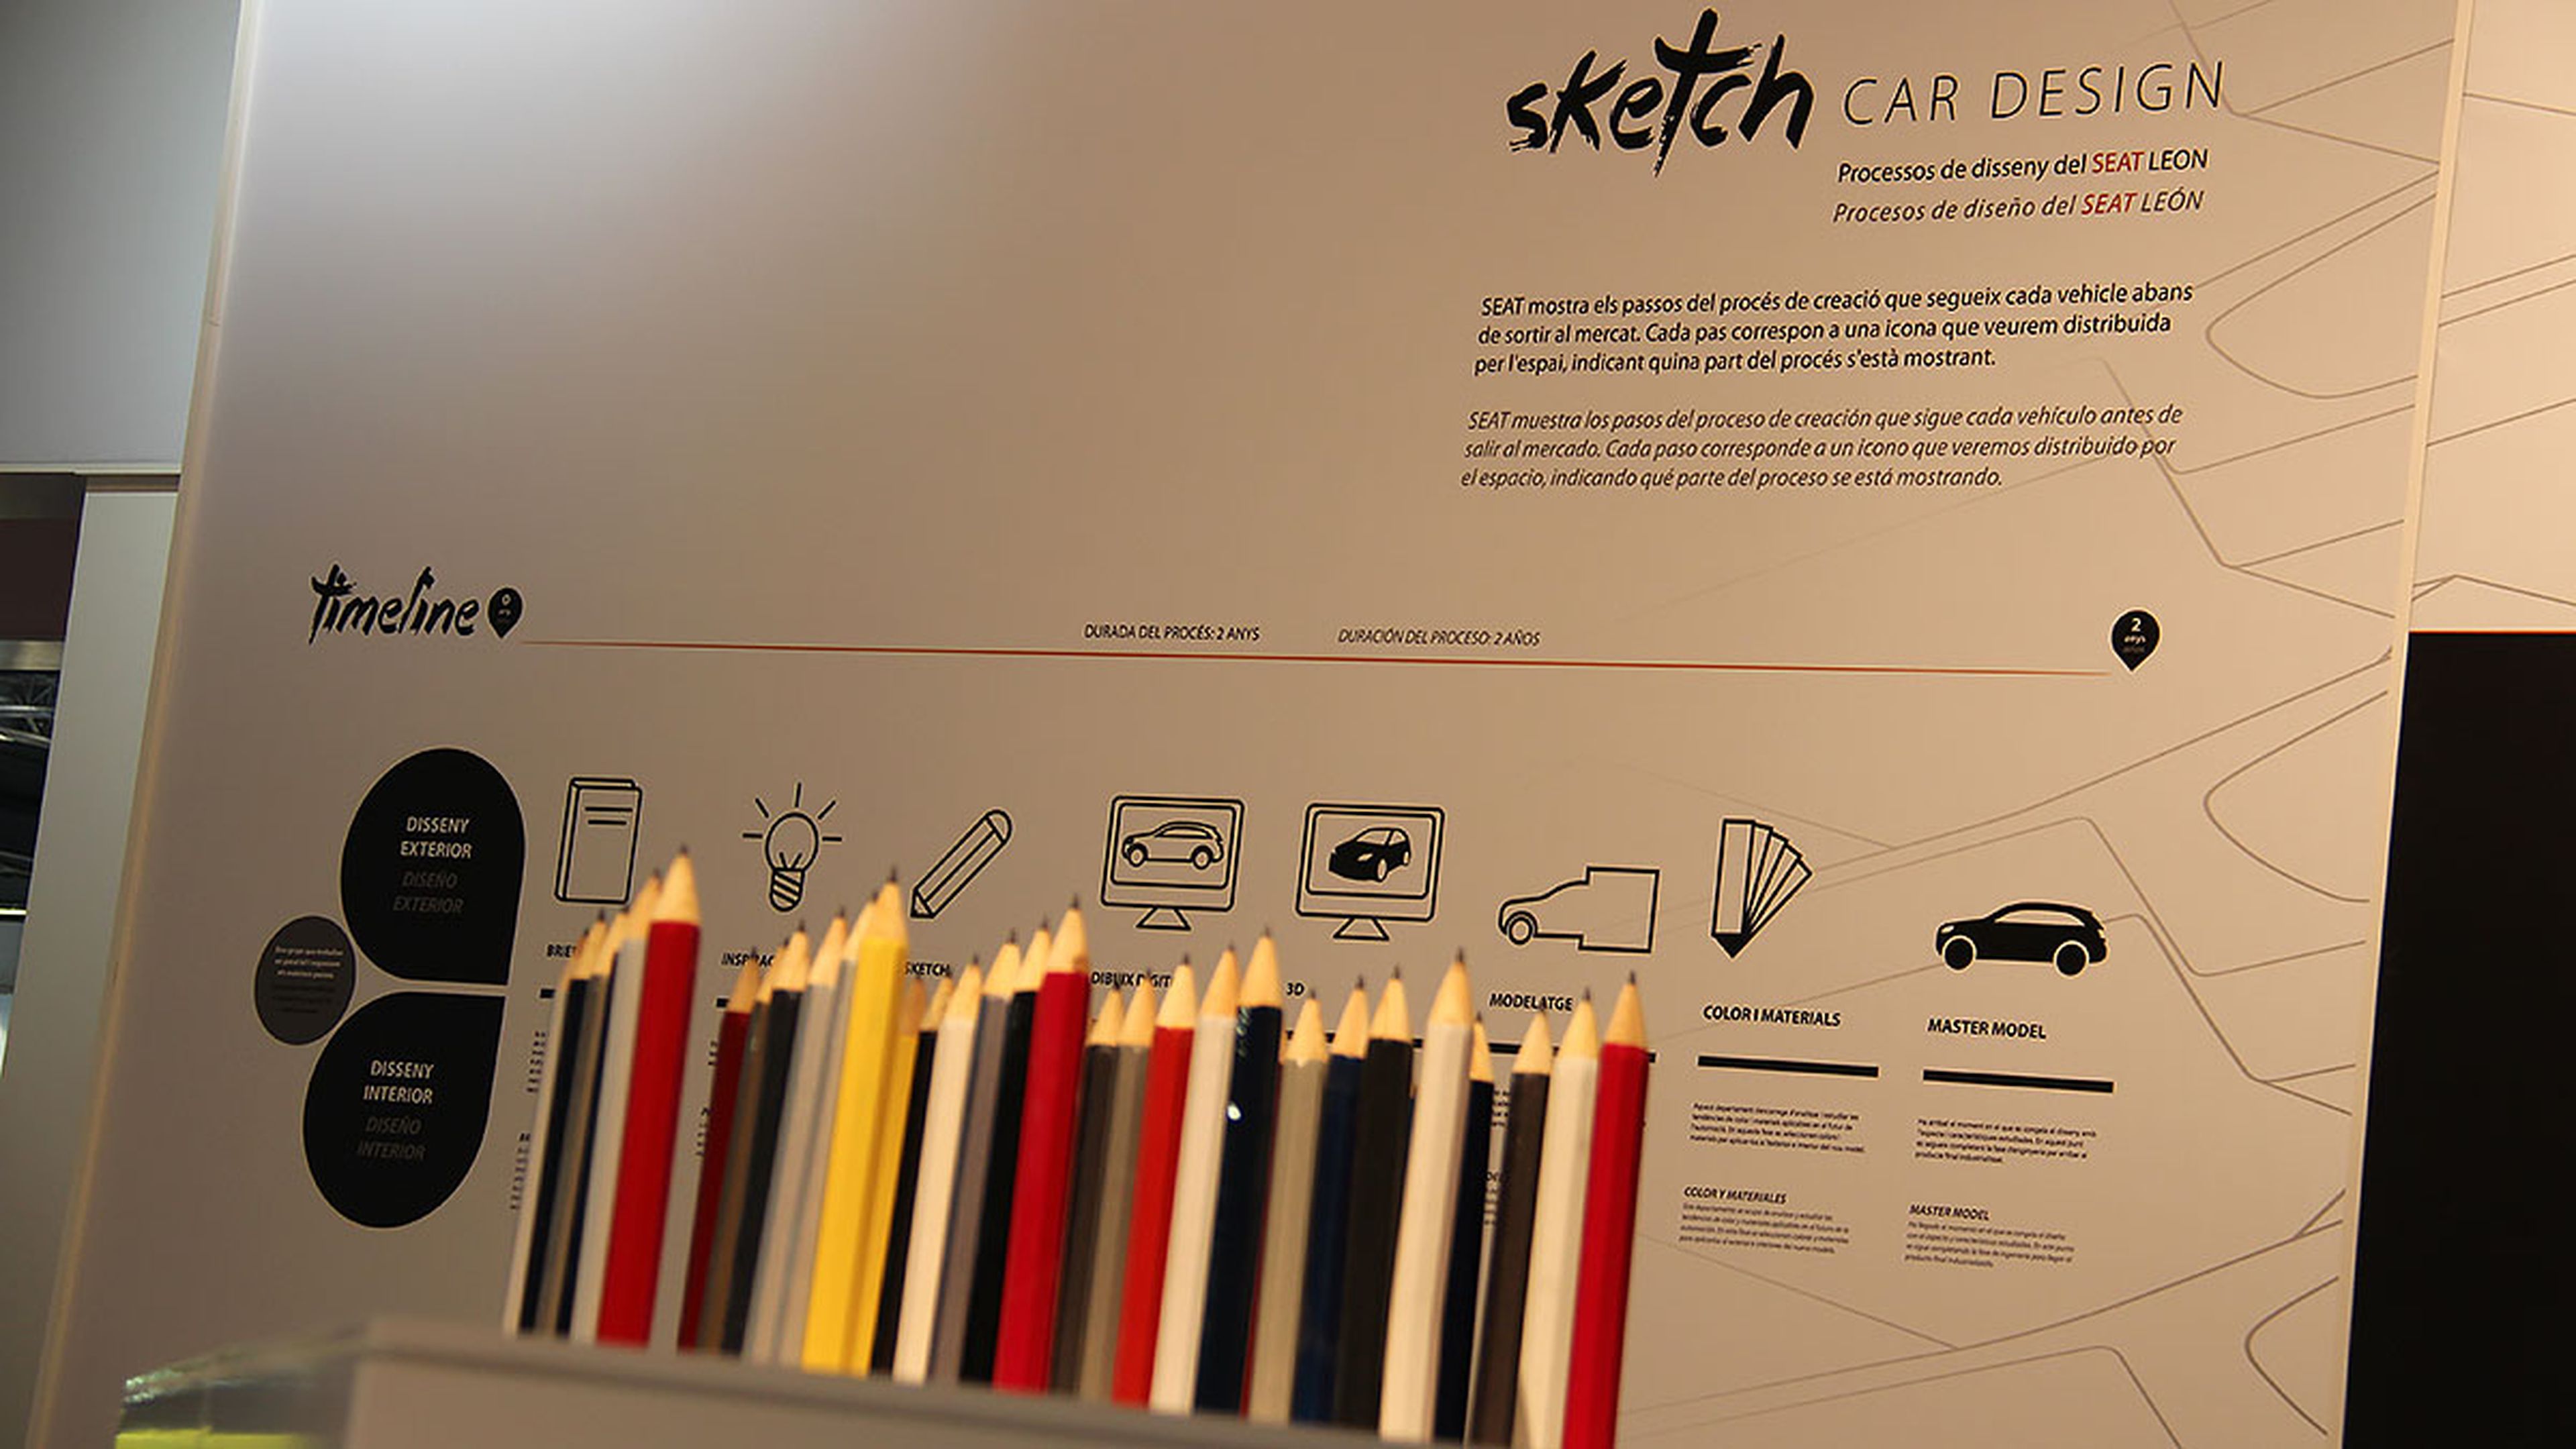 Sketch Car Design en el Salón de Barcelona 2015